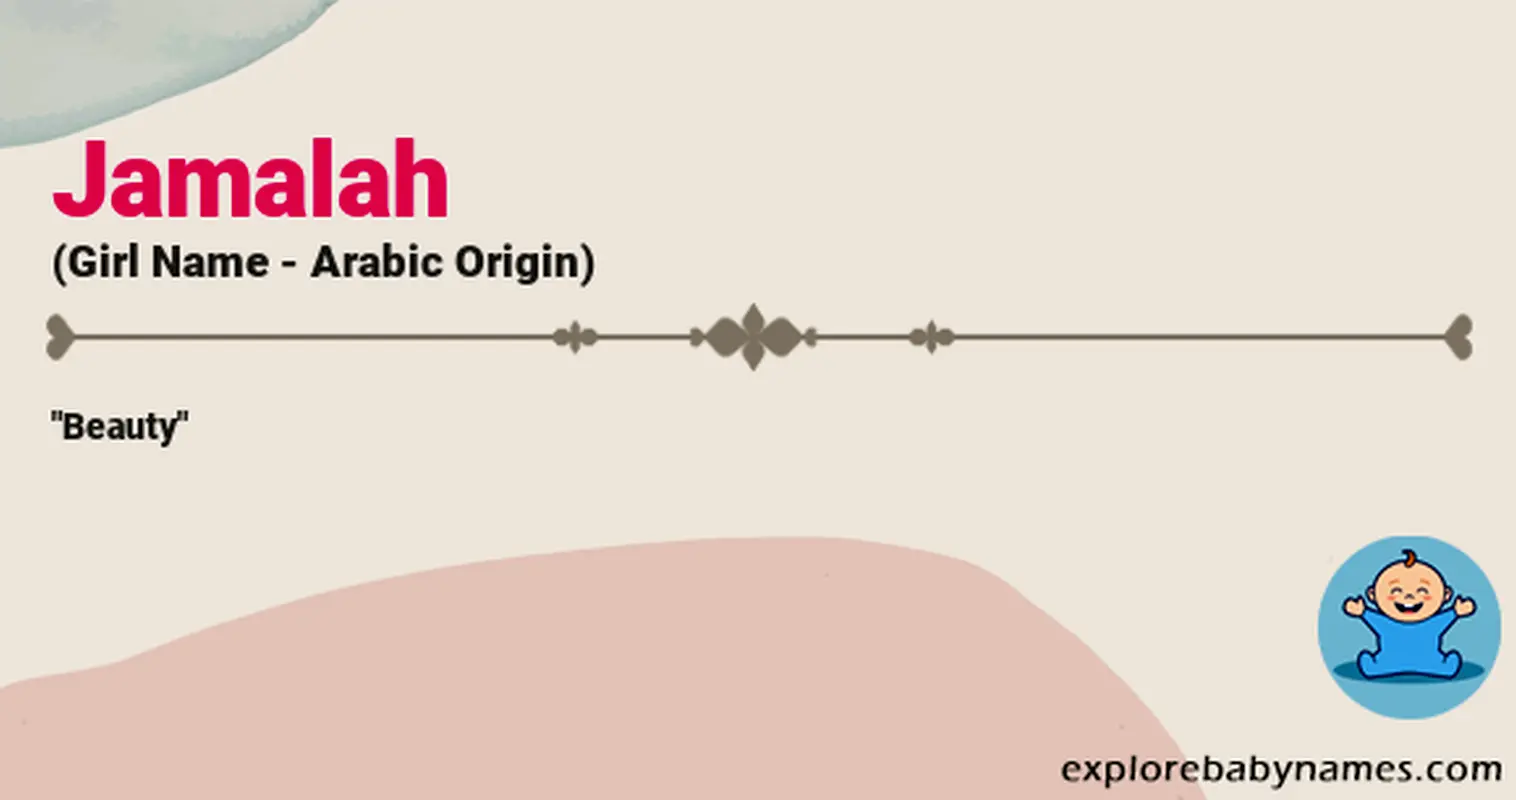 Meaning of Jamalah